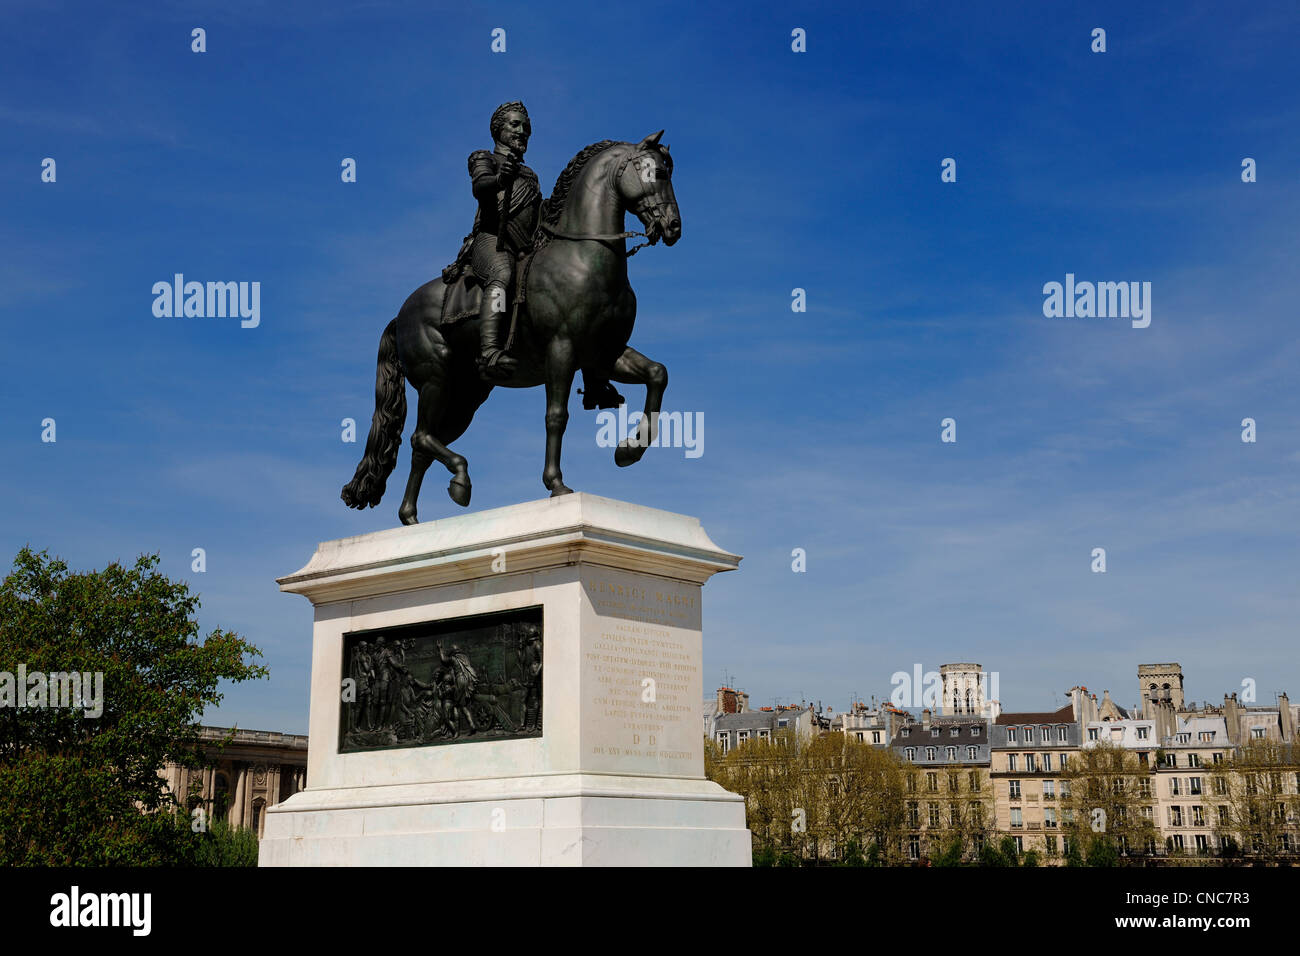 France, Paris, Ile de la Cite, the statue of Henri IV on the Pont Neuf Stock Photo